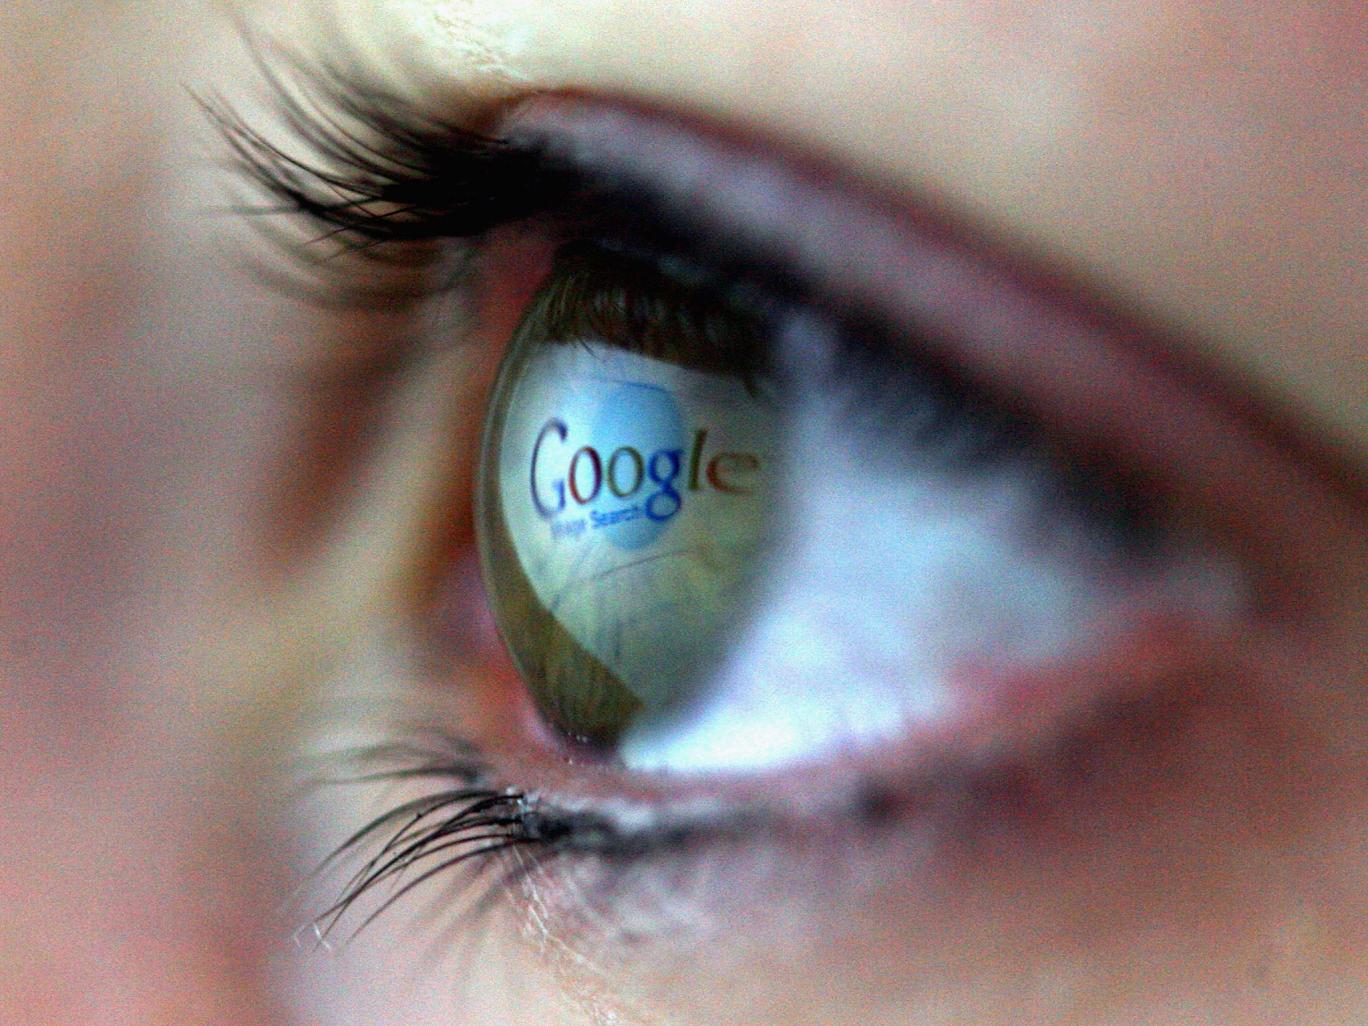 Esta nueva patente demuestra el interés de Google de crear ordenadores sobre y dentro del cuerpo humano.